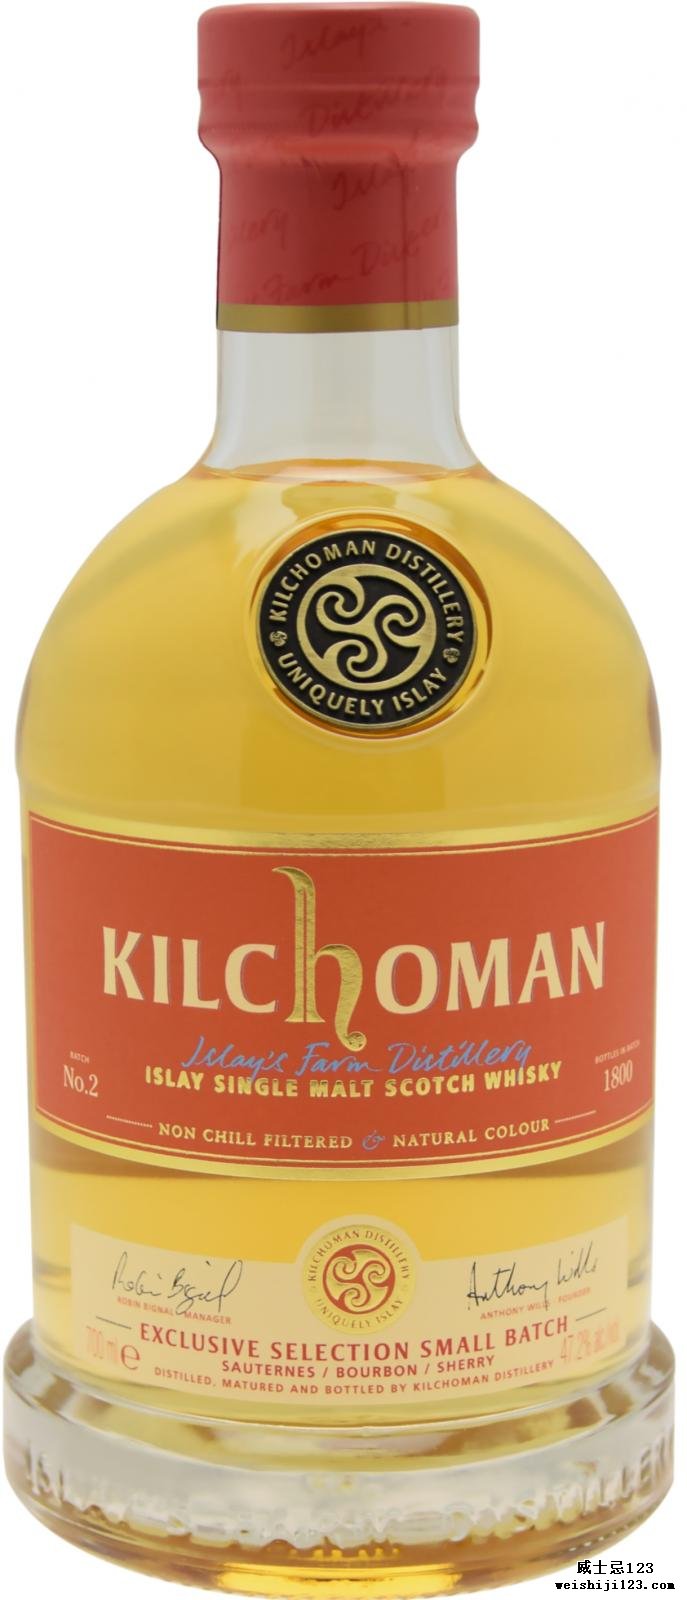 Kilchoman Small Batch N°2